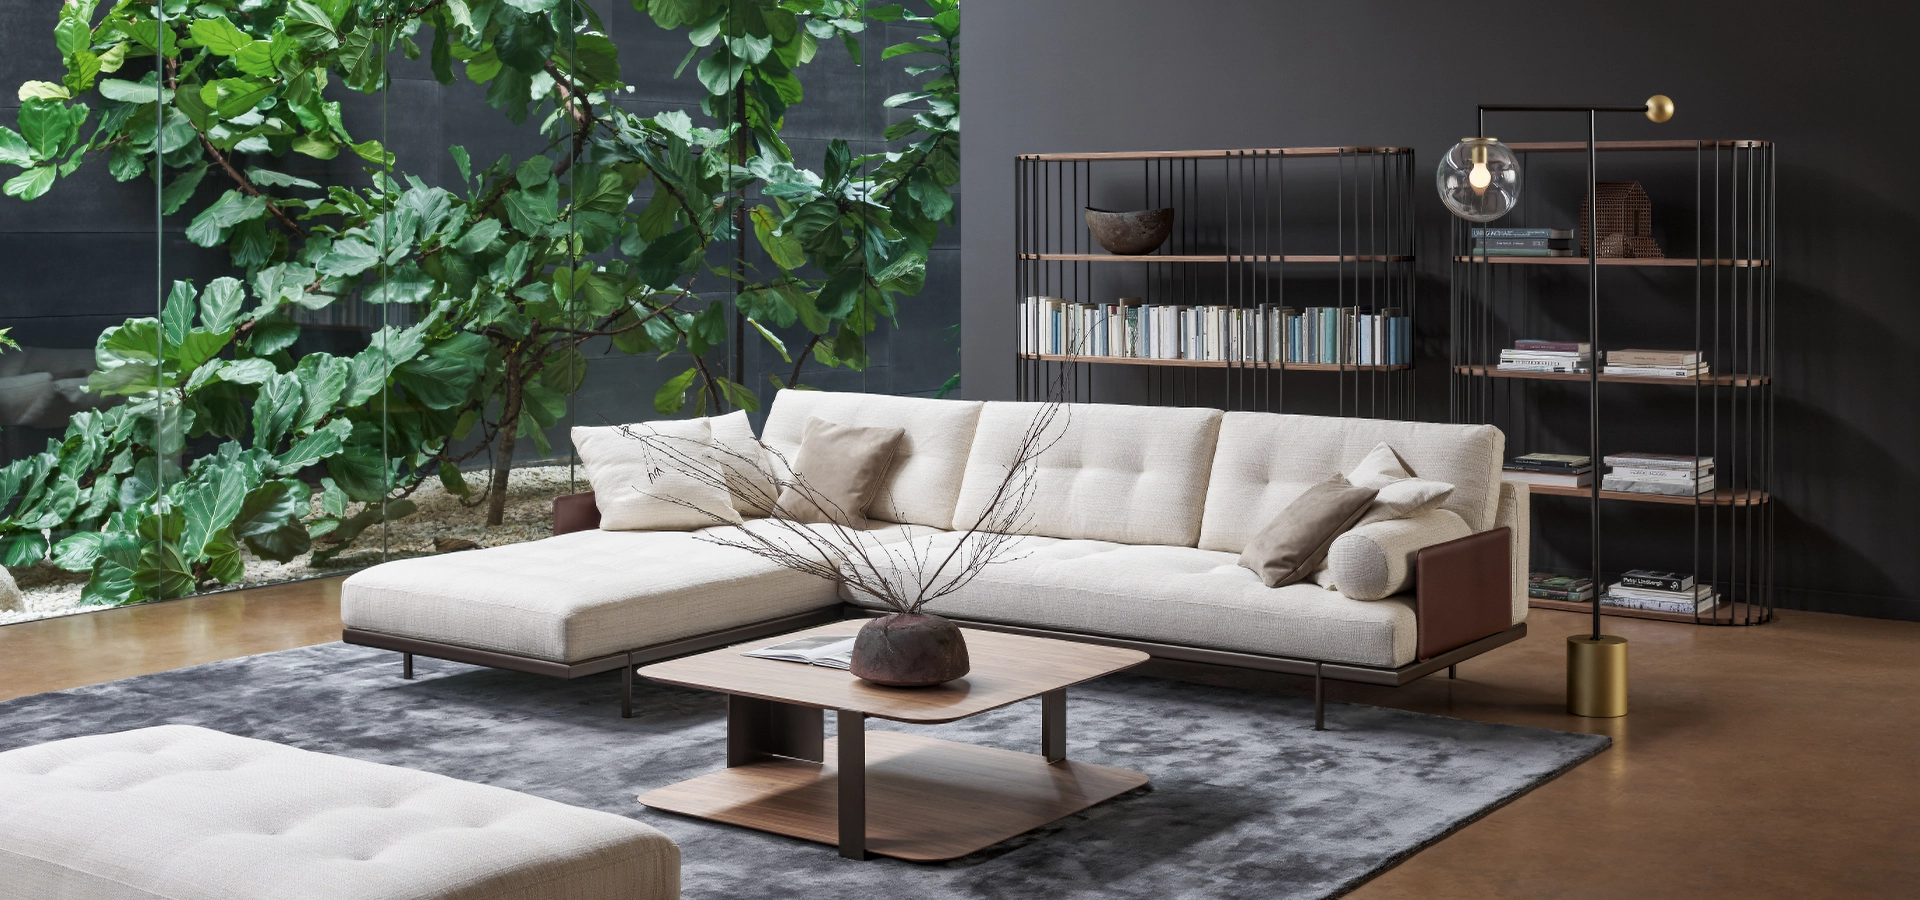 Stylový obývací pokoj s elegantní sedací soupravou Maxmilian, minimalistickou knihovnou Arpa, moderním světlem Bardot a sofistikovaným konferenčním stolkem Paddle, vše od prestižního výrobce Bonaldo